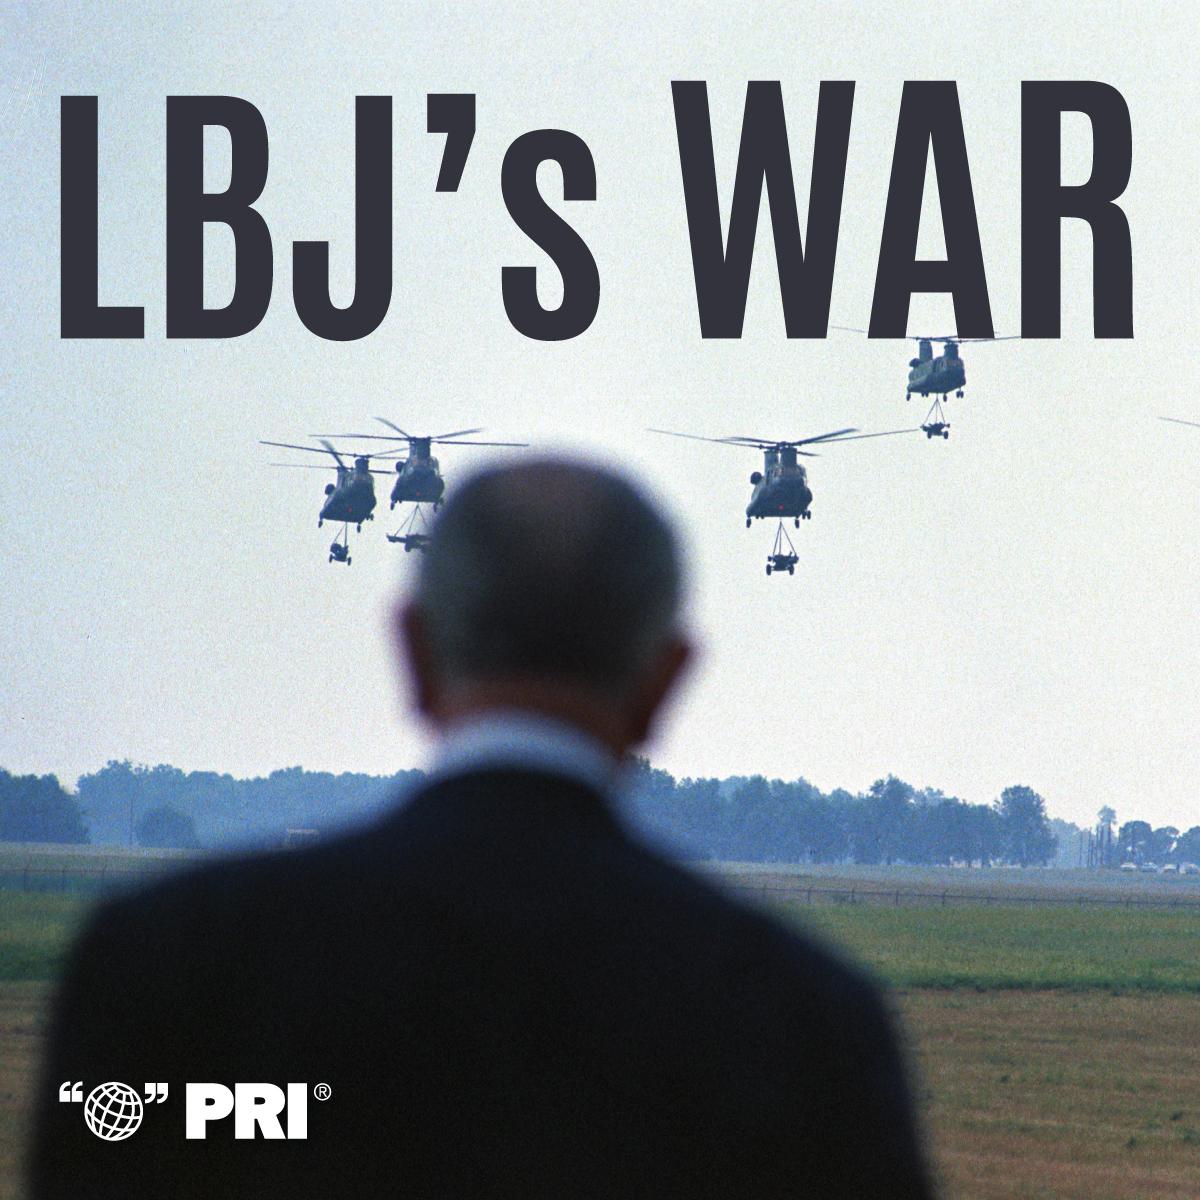 LBJ's War